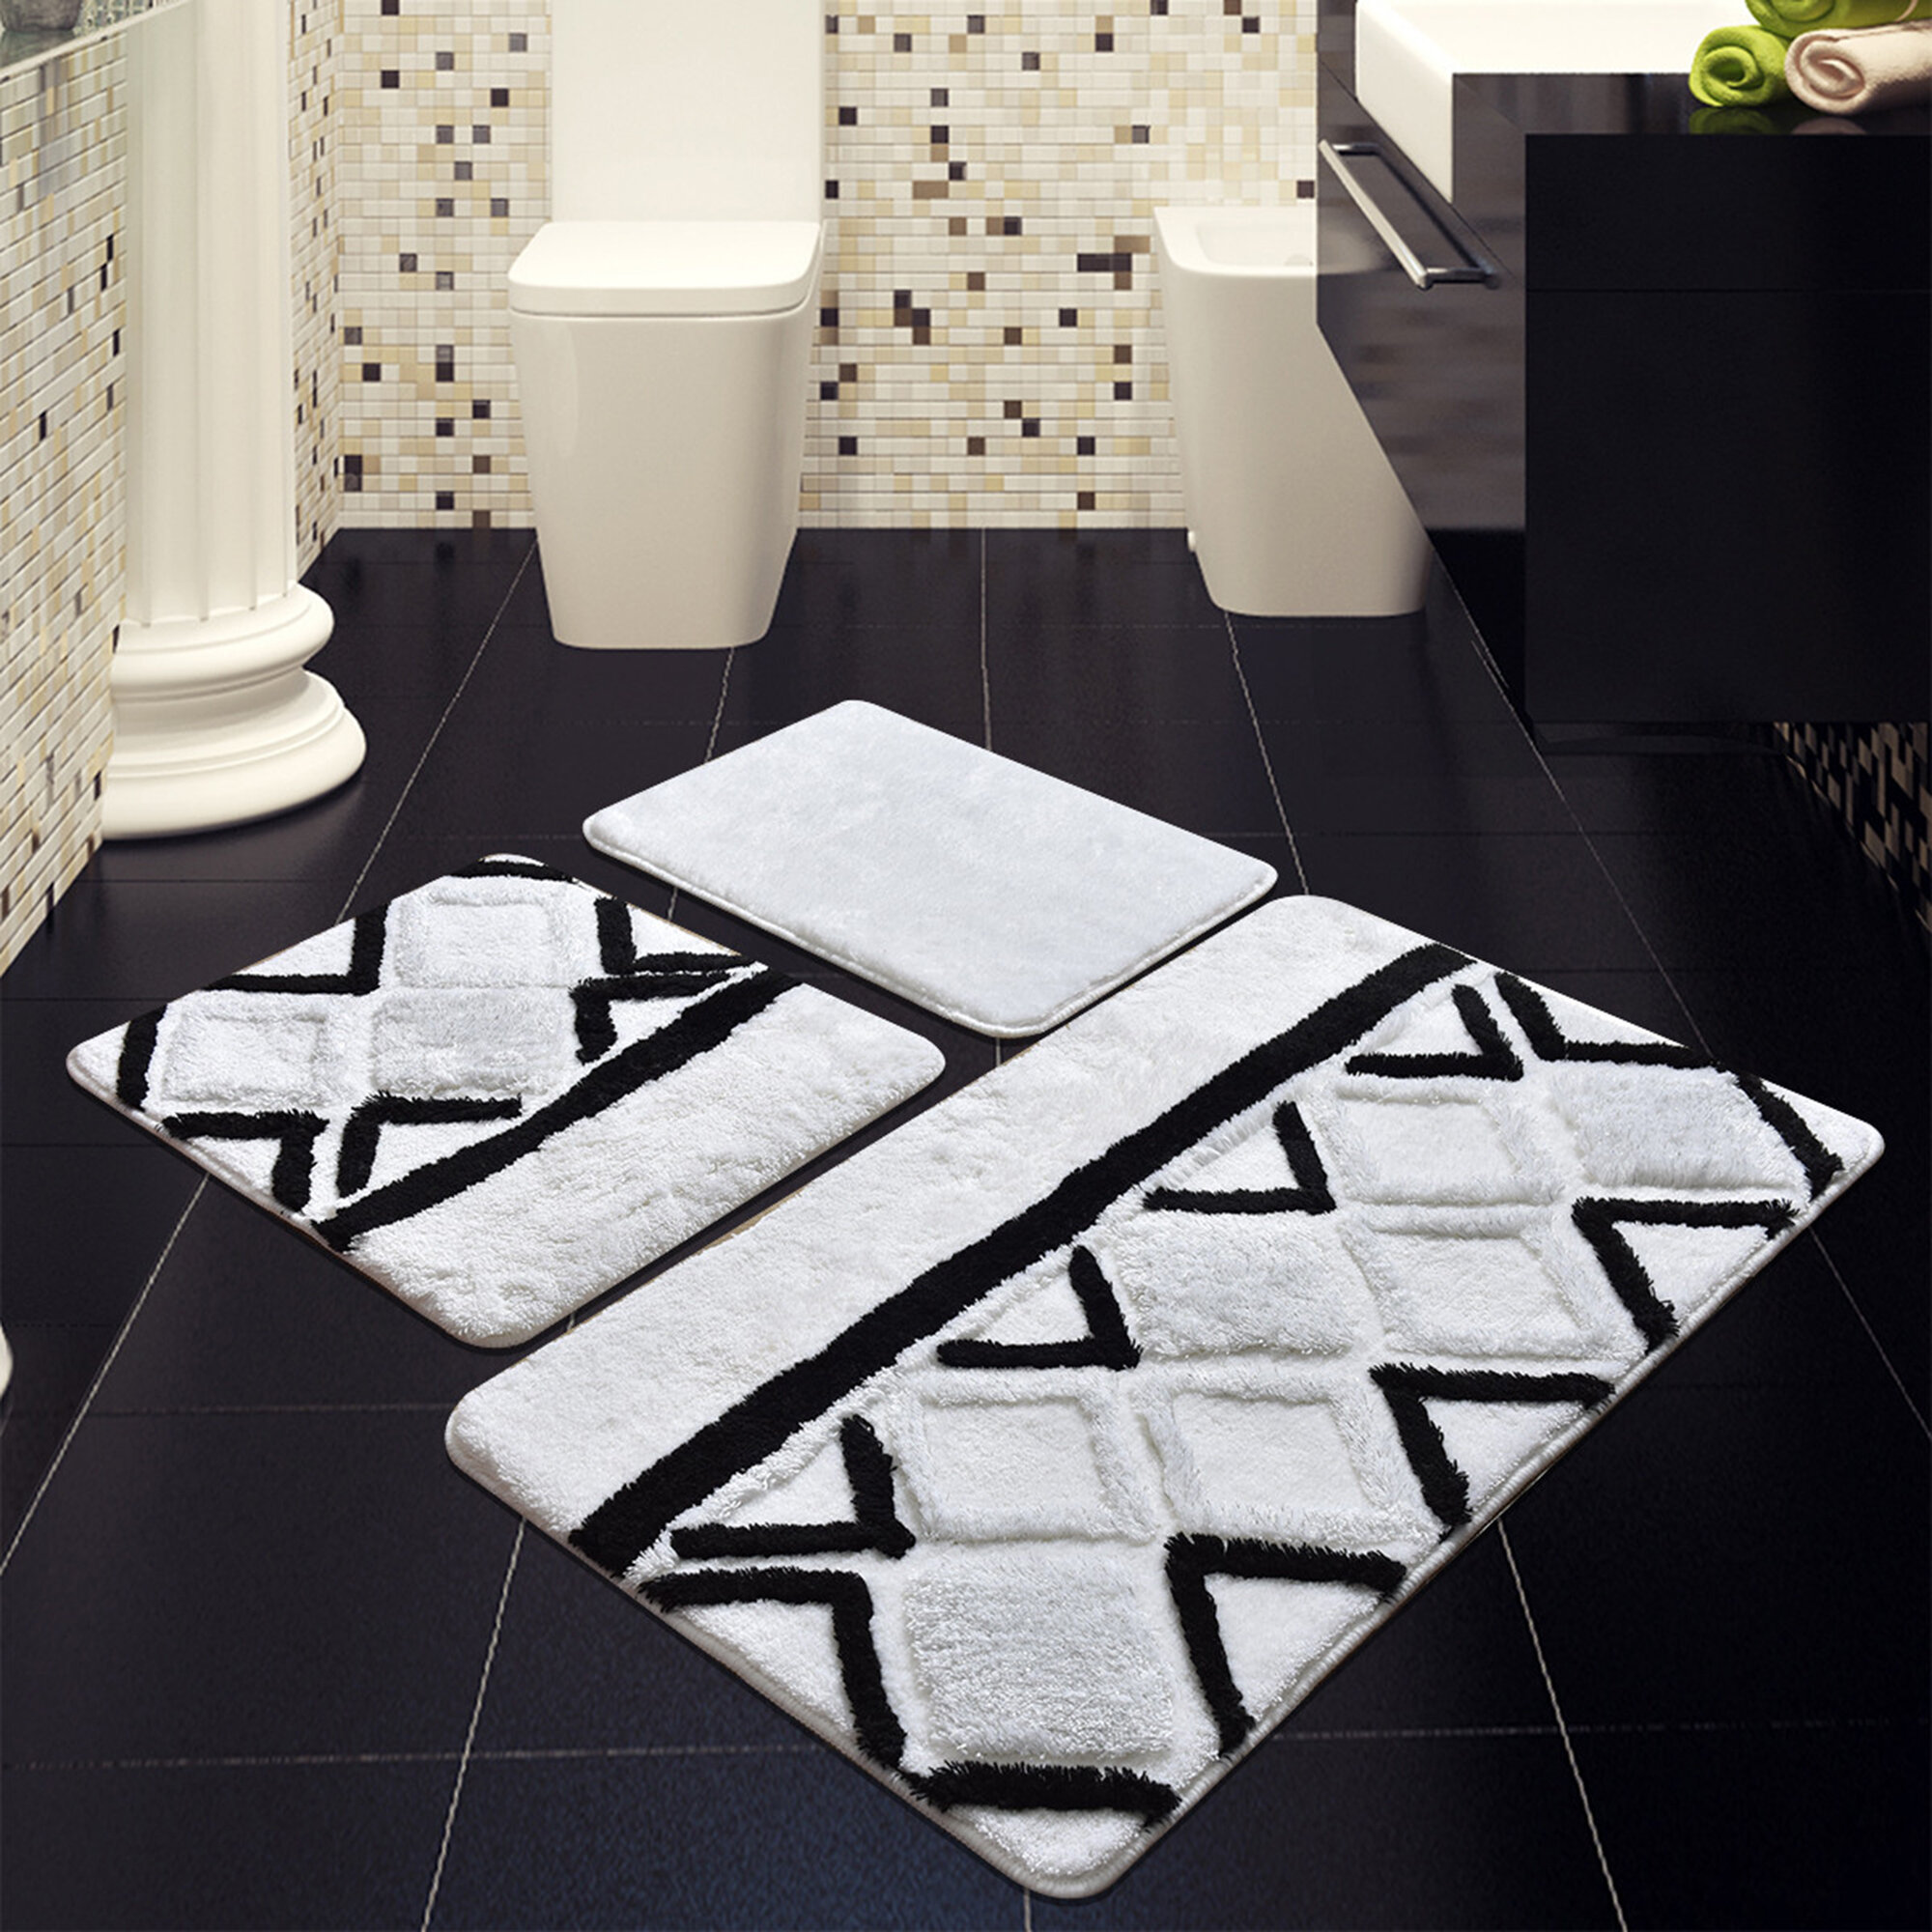 Zavin Non-Slip Absorbent Shaggy Bath Rug Ebern Designs Color: White, Size: 20 x 30